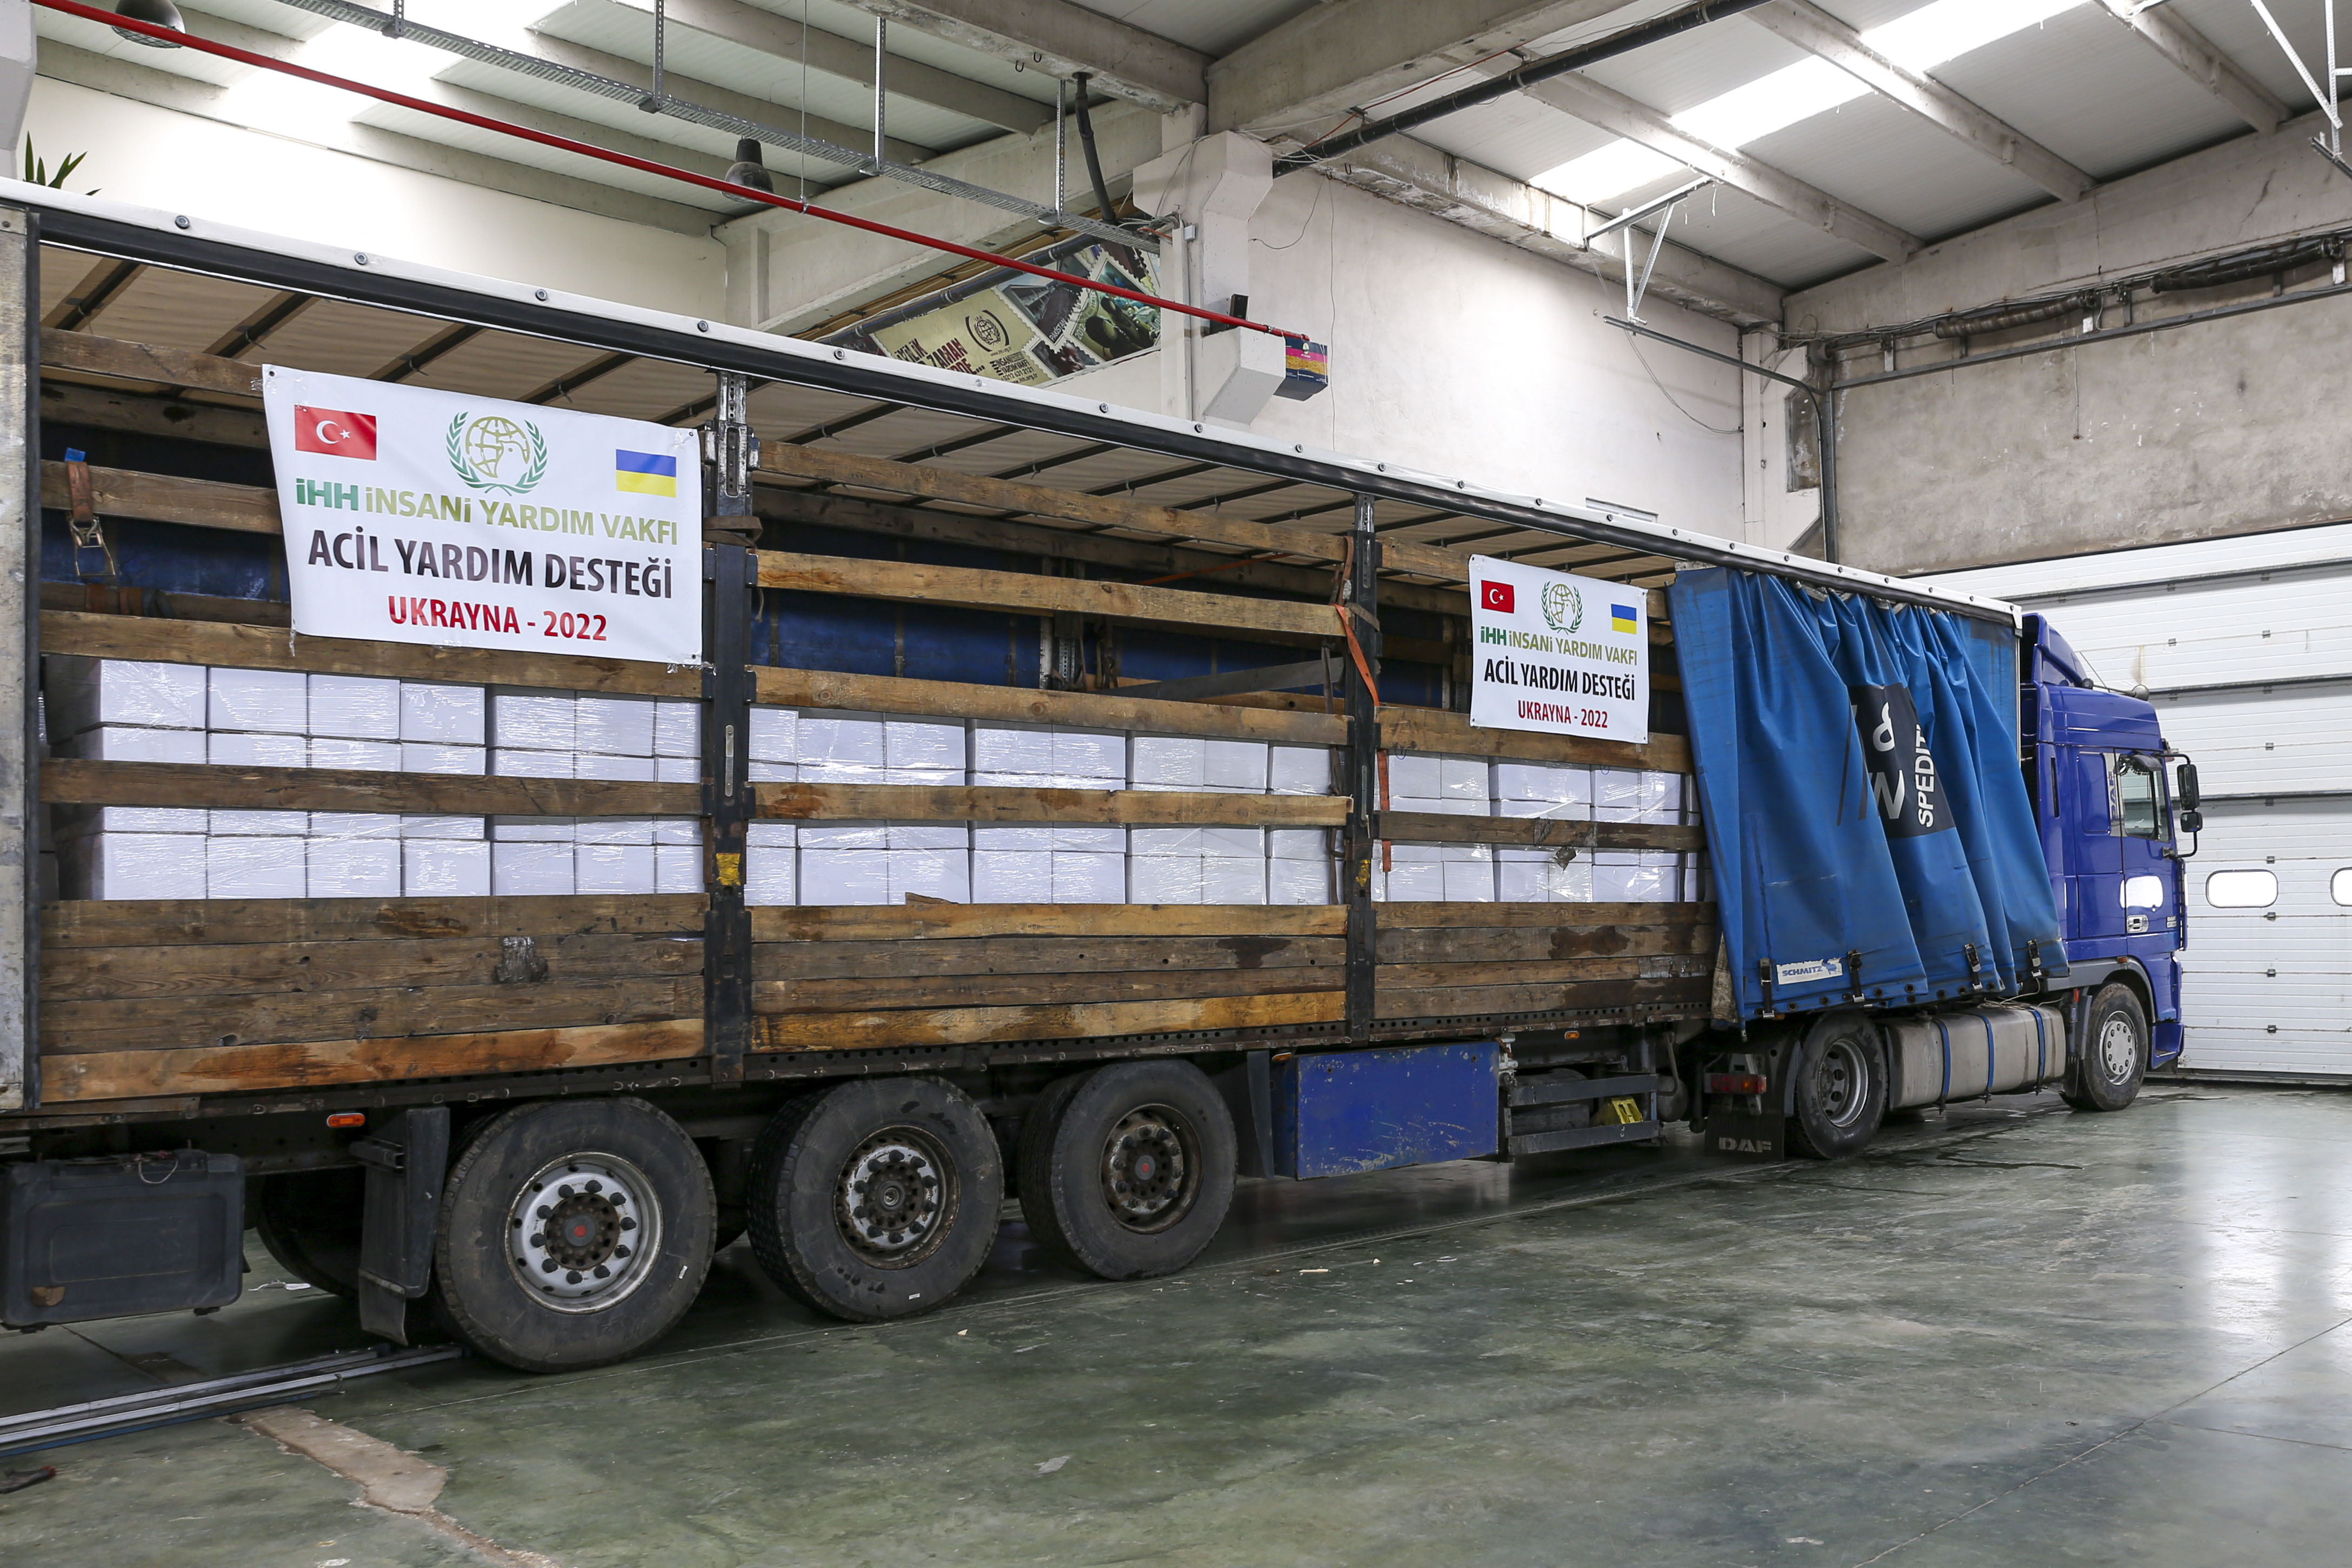 2 Truckloads of Aid to Ukraine